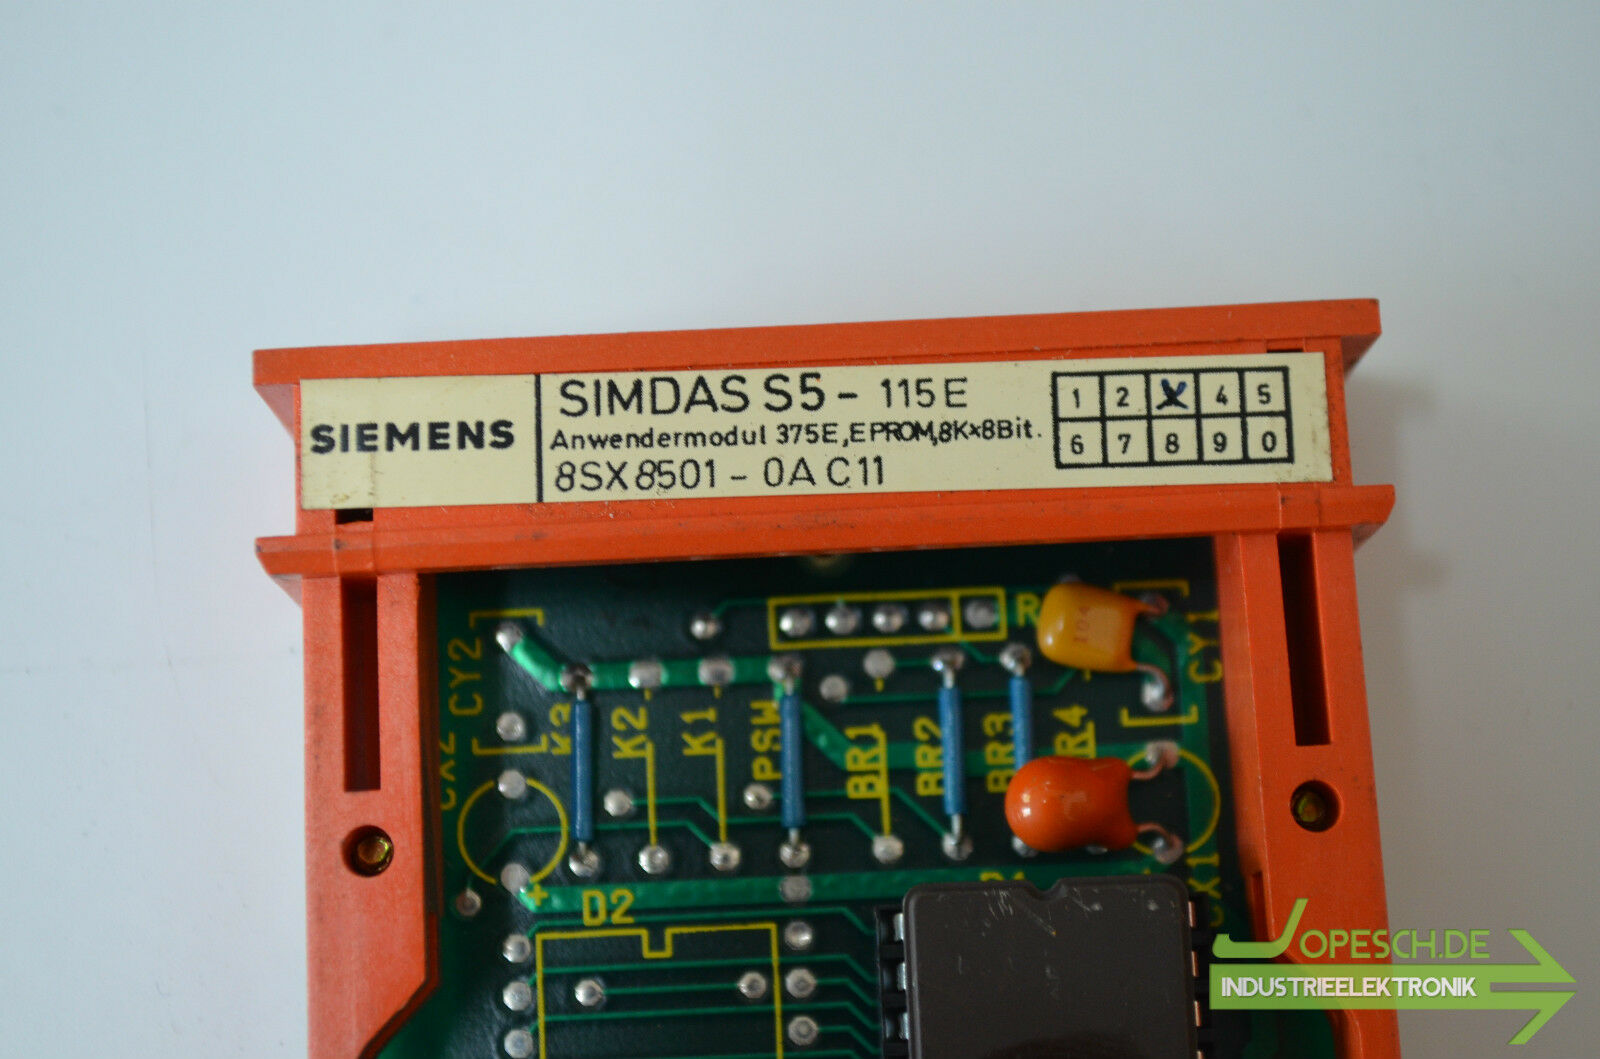 Siemens simdas S5 Anwendermodul 375E 8SX8501-0AC11